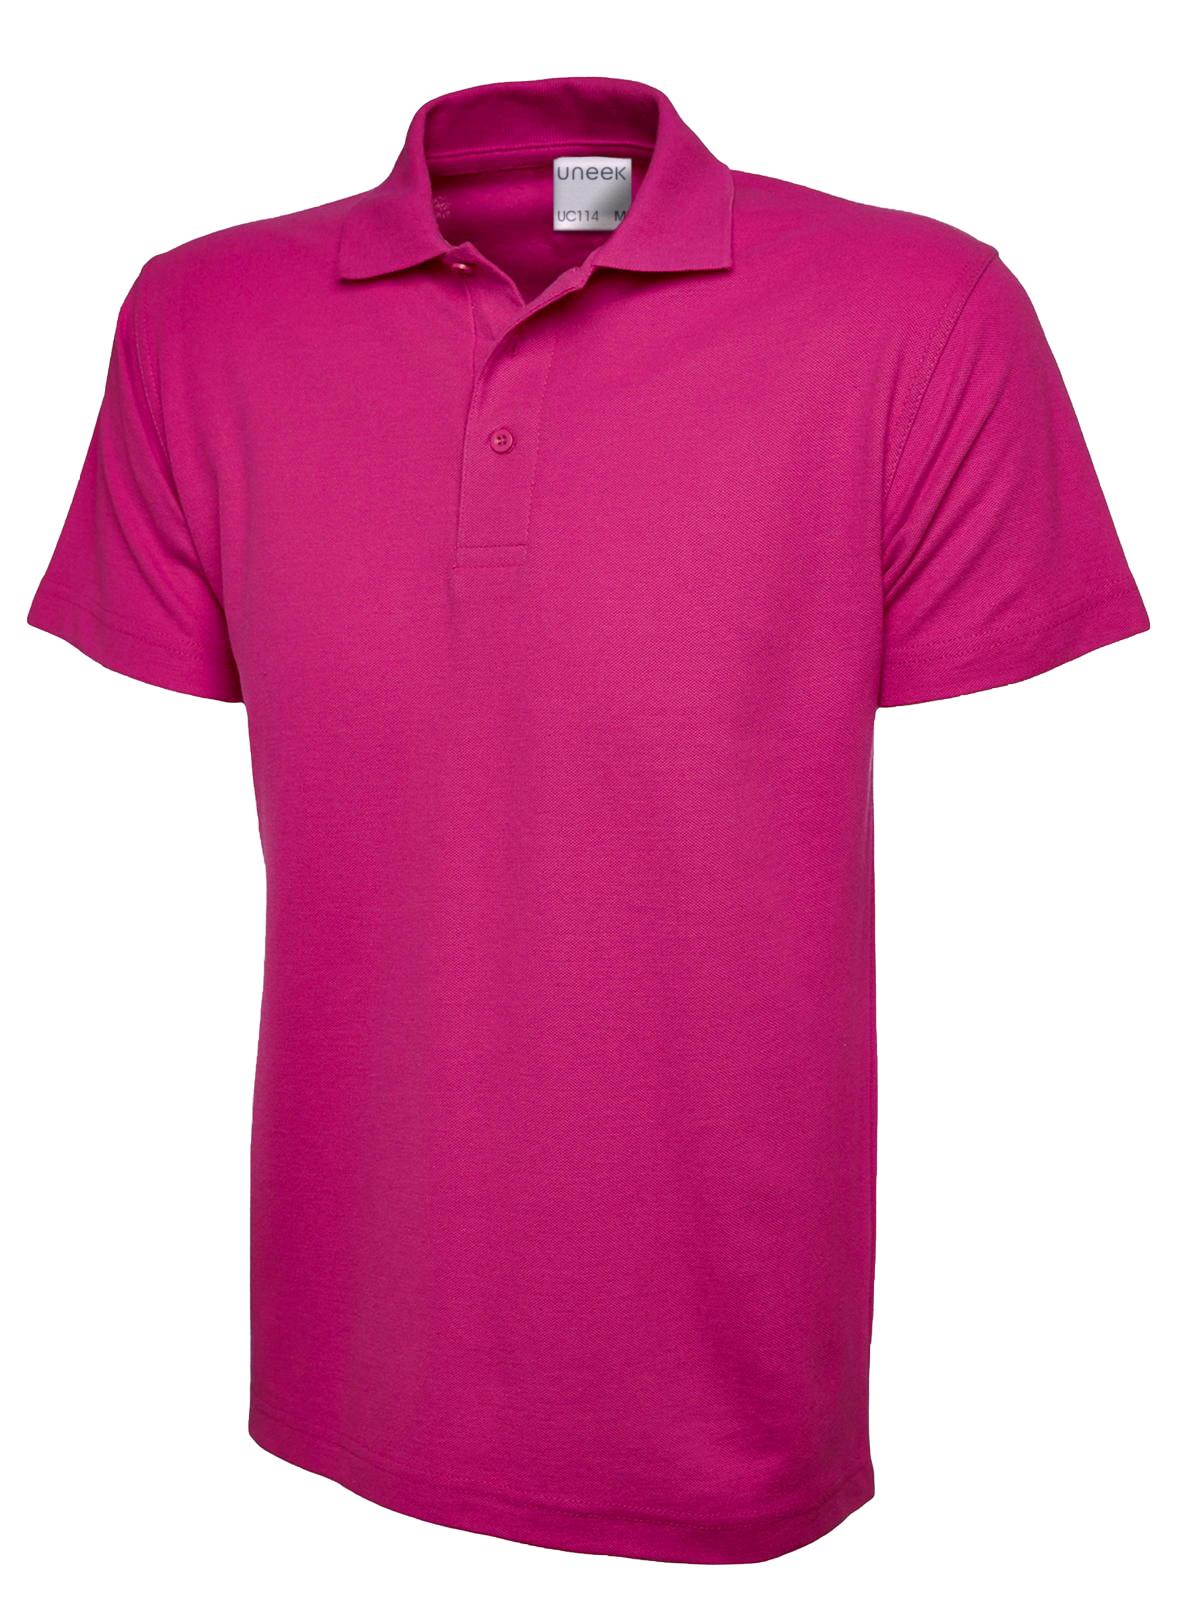 Uneek Men's Ultra Cotton Poloshirt UC114 - Hot Pink